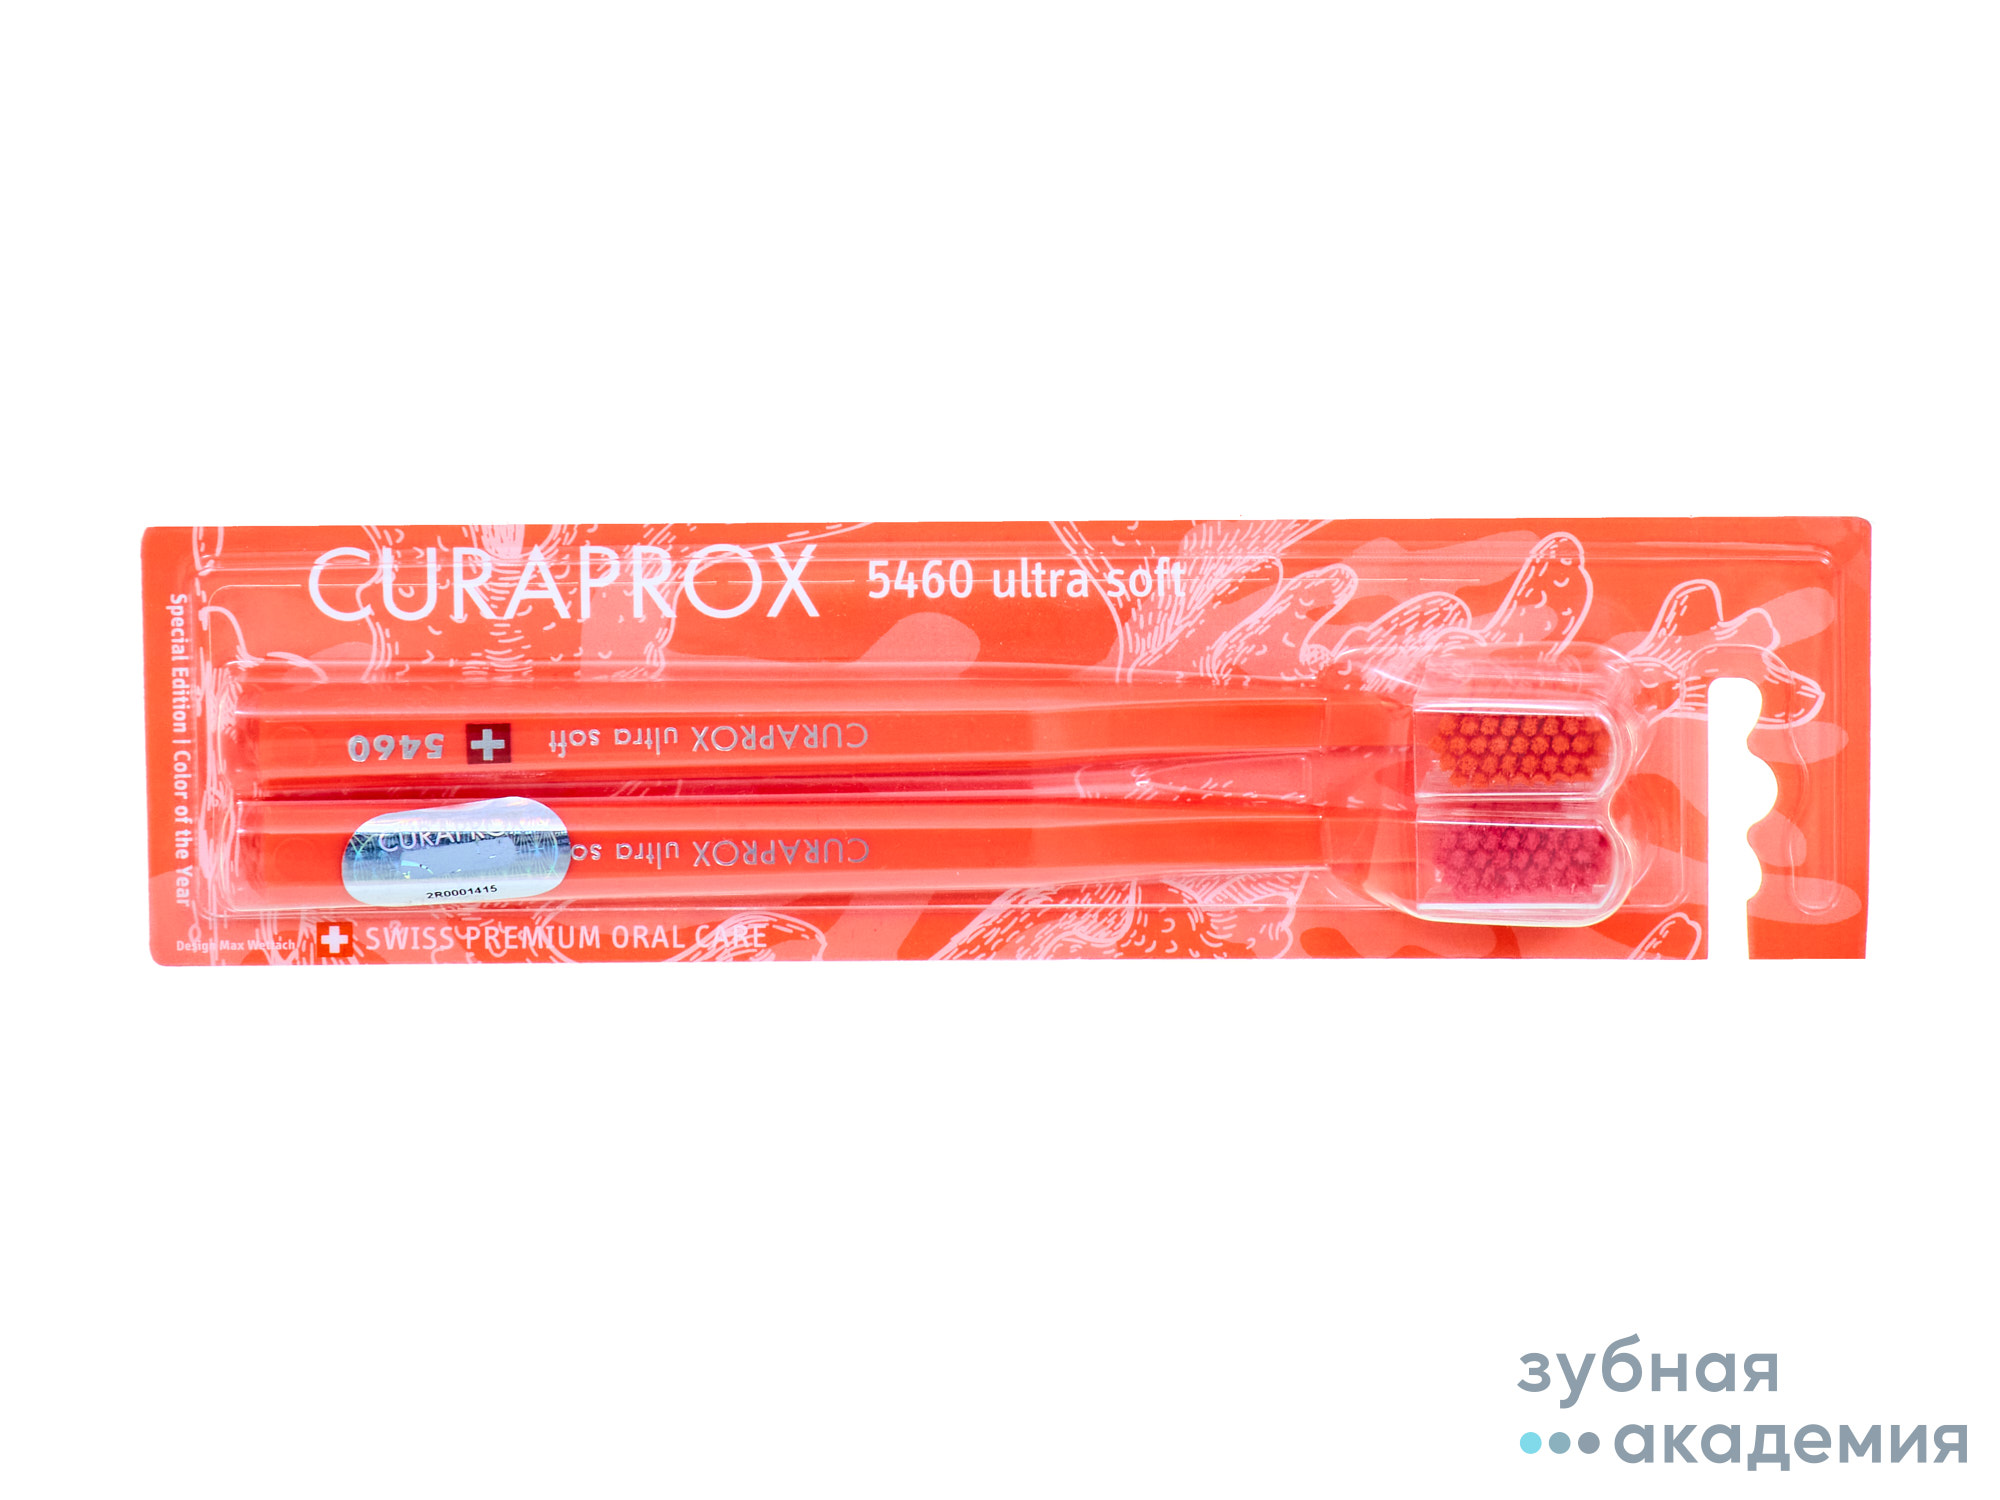 Зубная щётка ultrasoft набор, d 0,10 мм упаковка 2 шт./Curadent/Швейцария